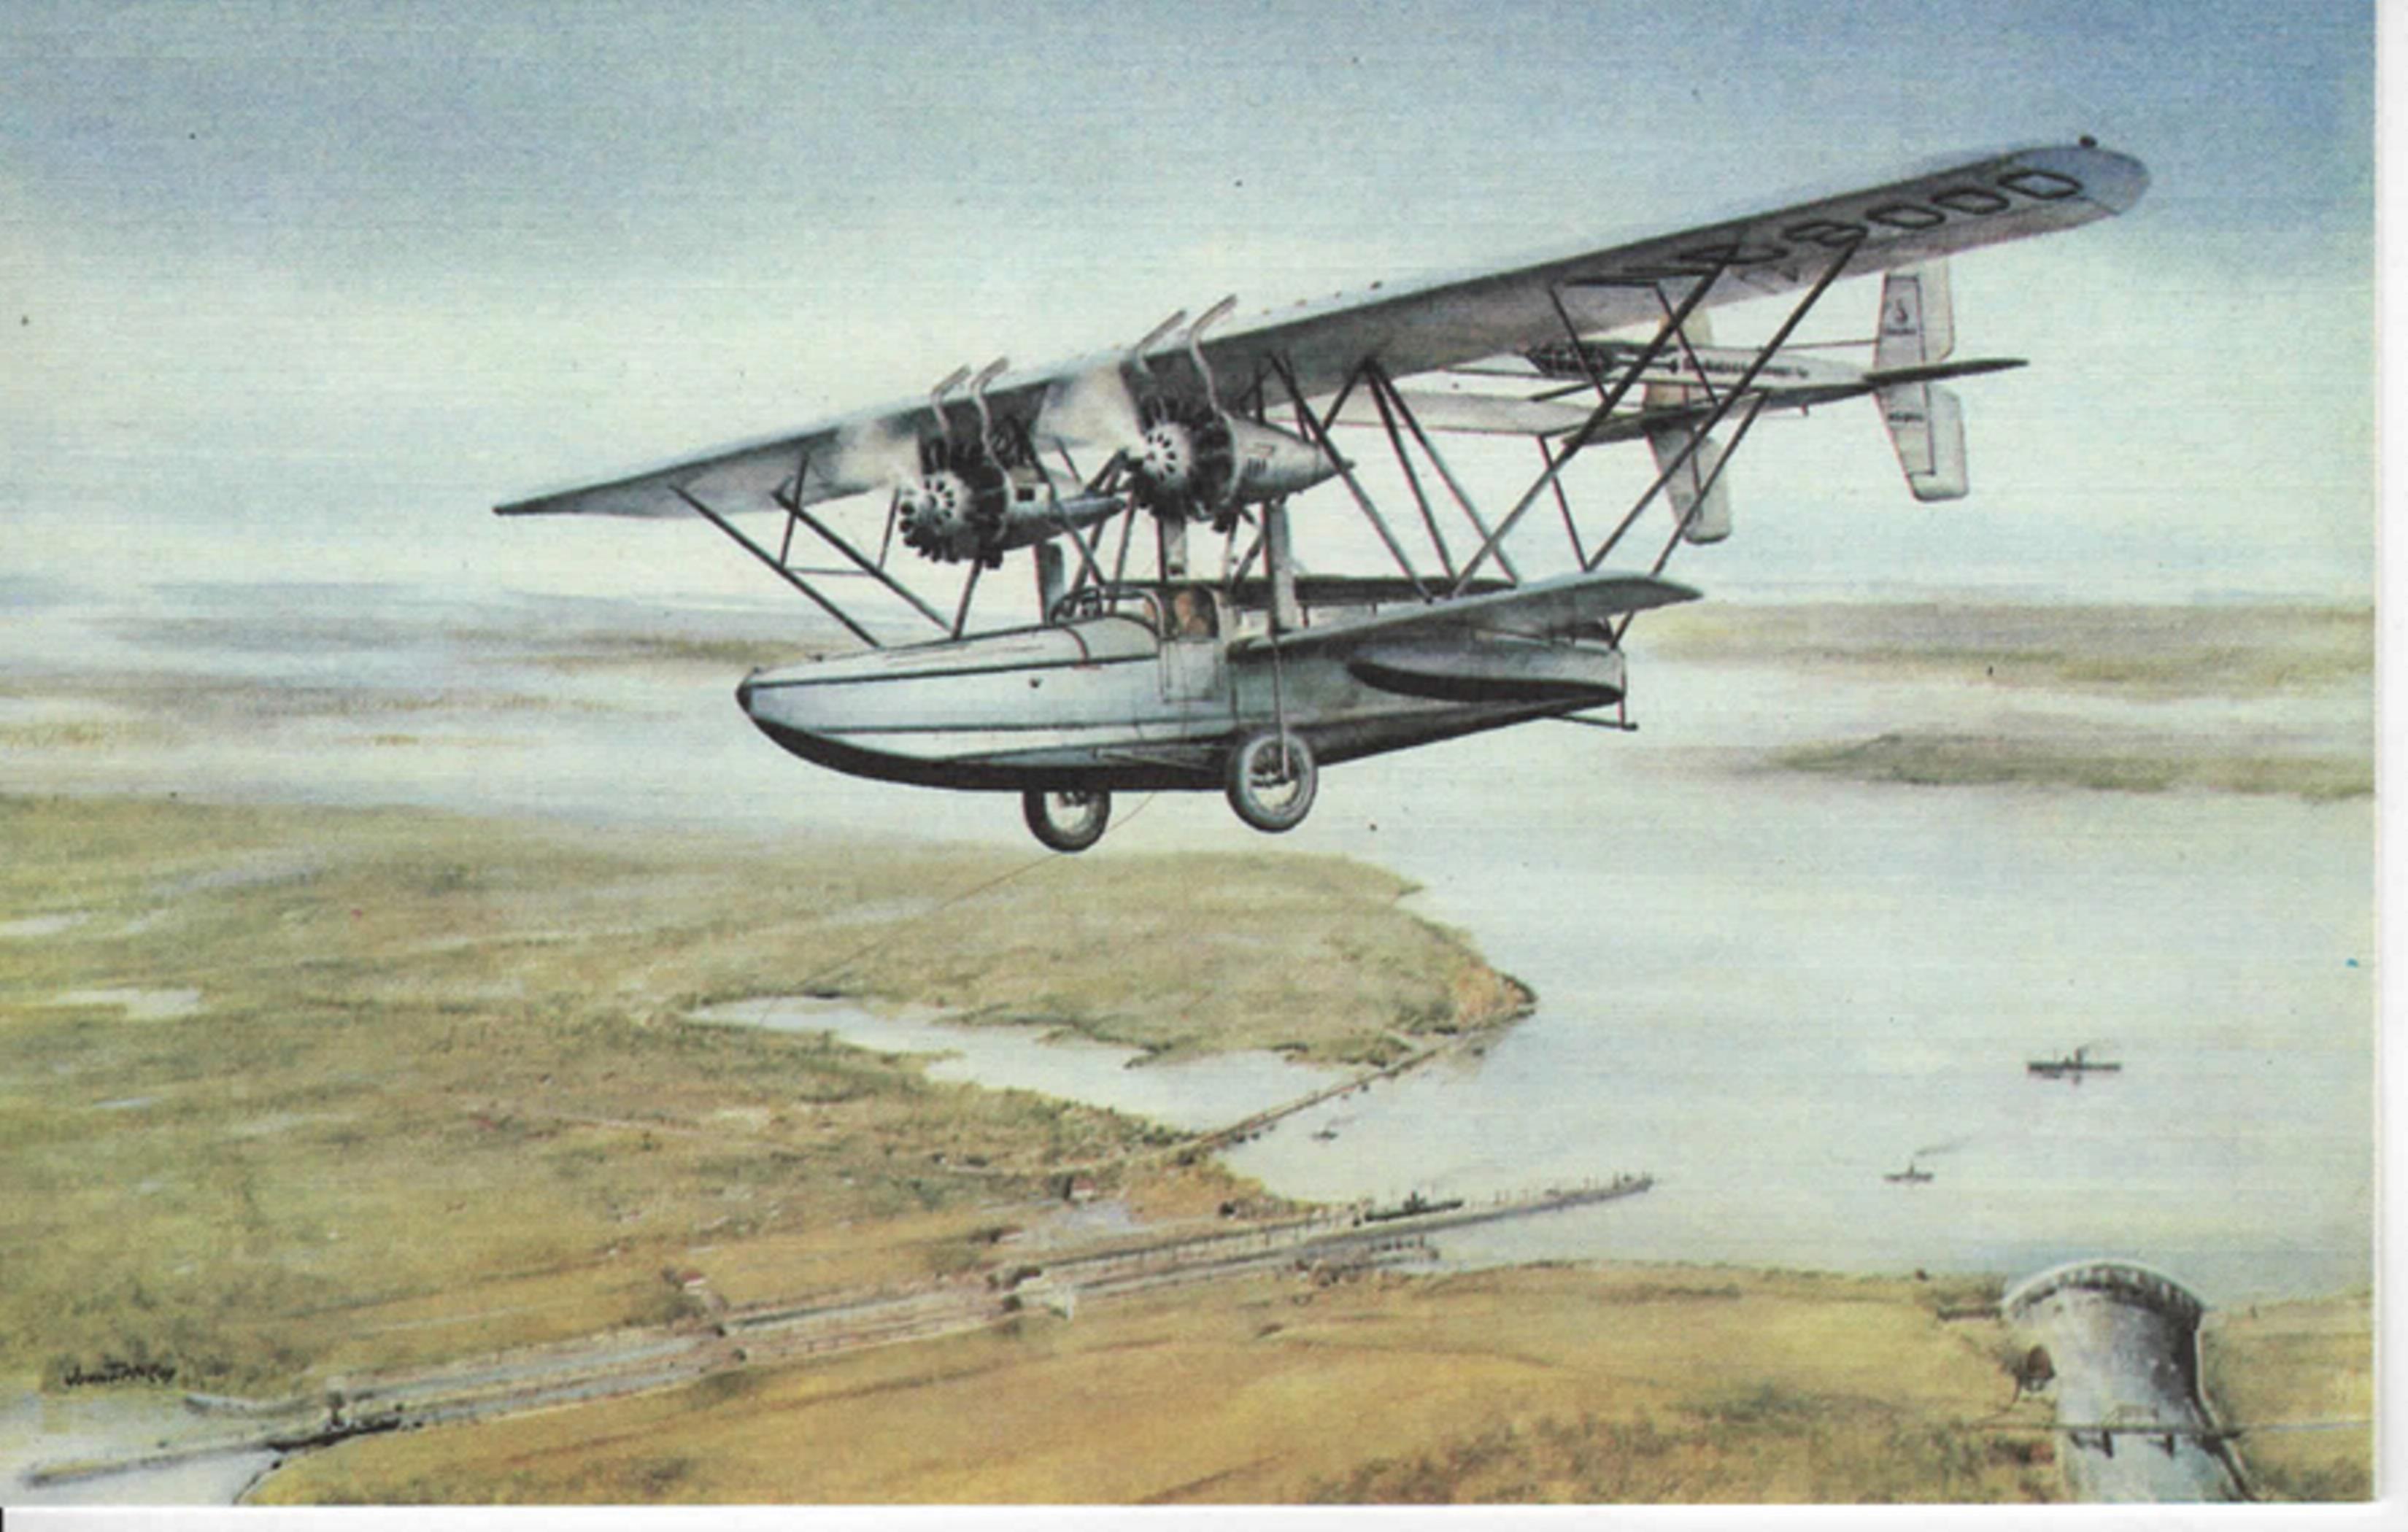 Поштова листівка із зображенням літака-амфібії S-38 компанії «Pan American» у польоті над каналом у Маямі. США. 6 лютого 1929 рік